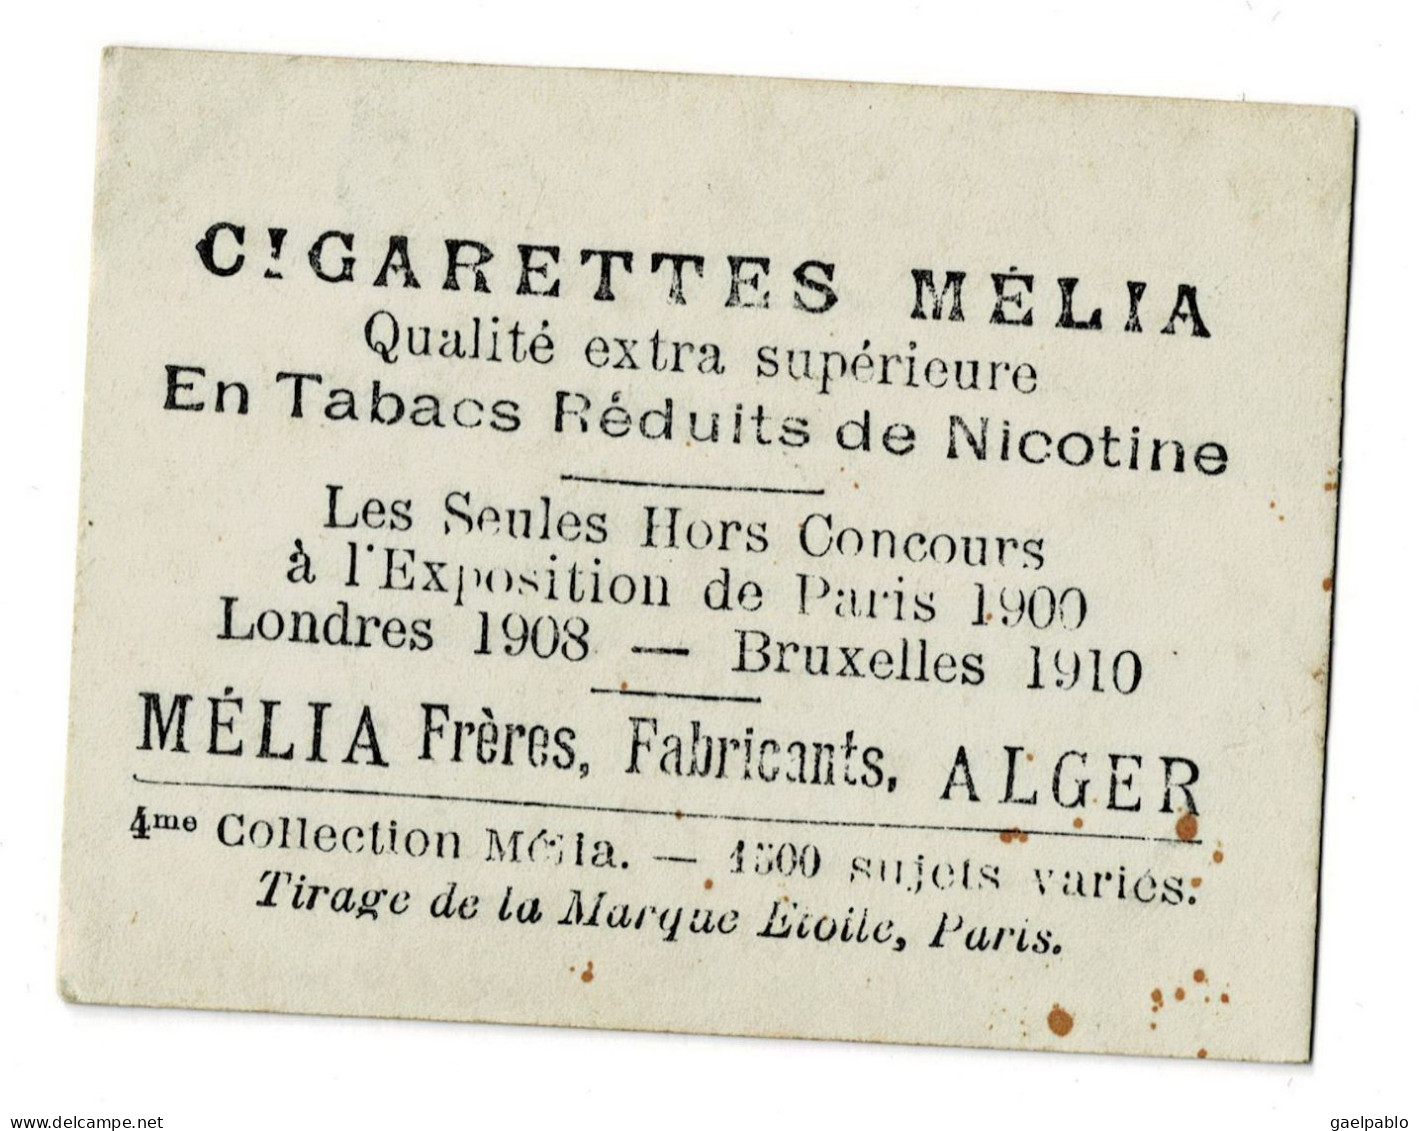 CIGARETTES MELIA - CLARENCE - Tirage De La Marque Etoile - 4ème Collection Mélia - Melia